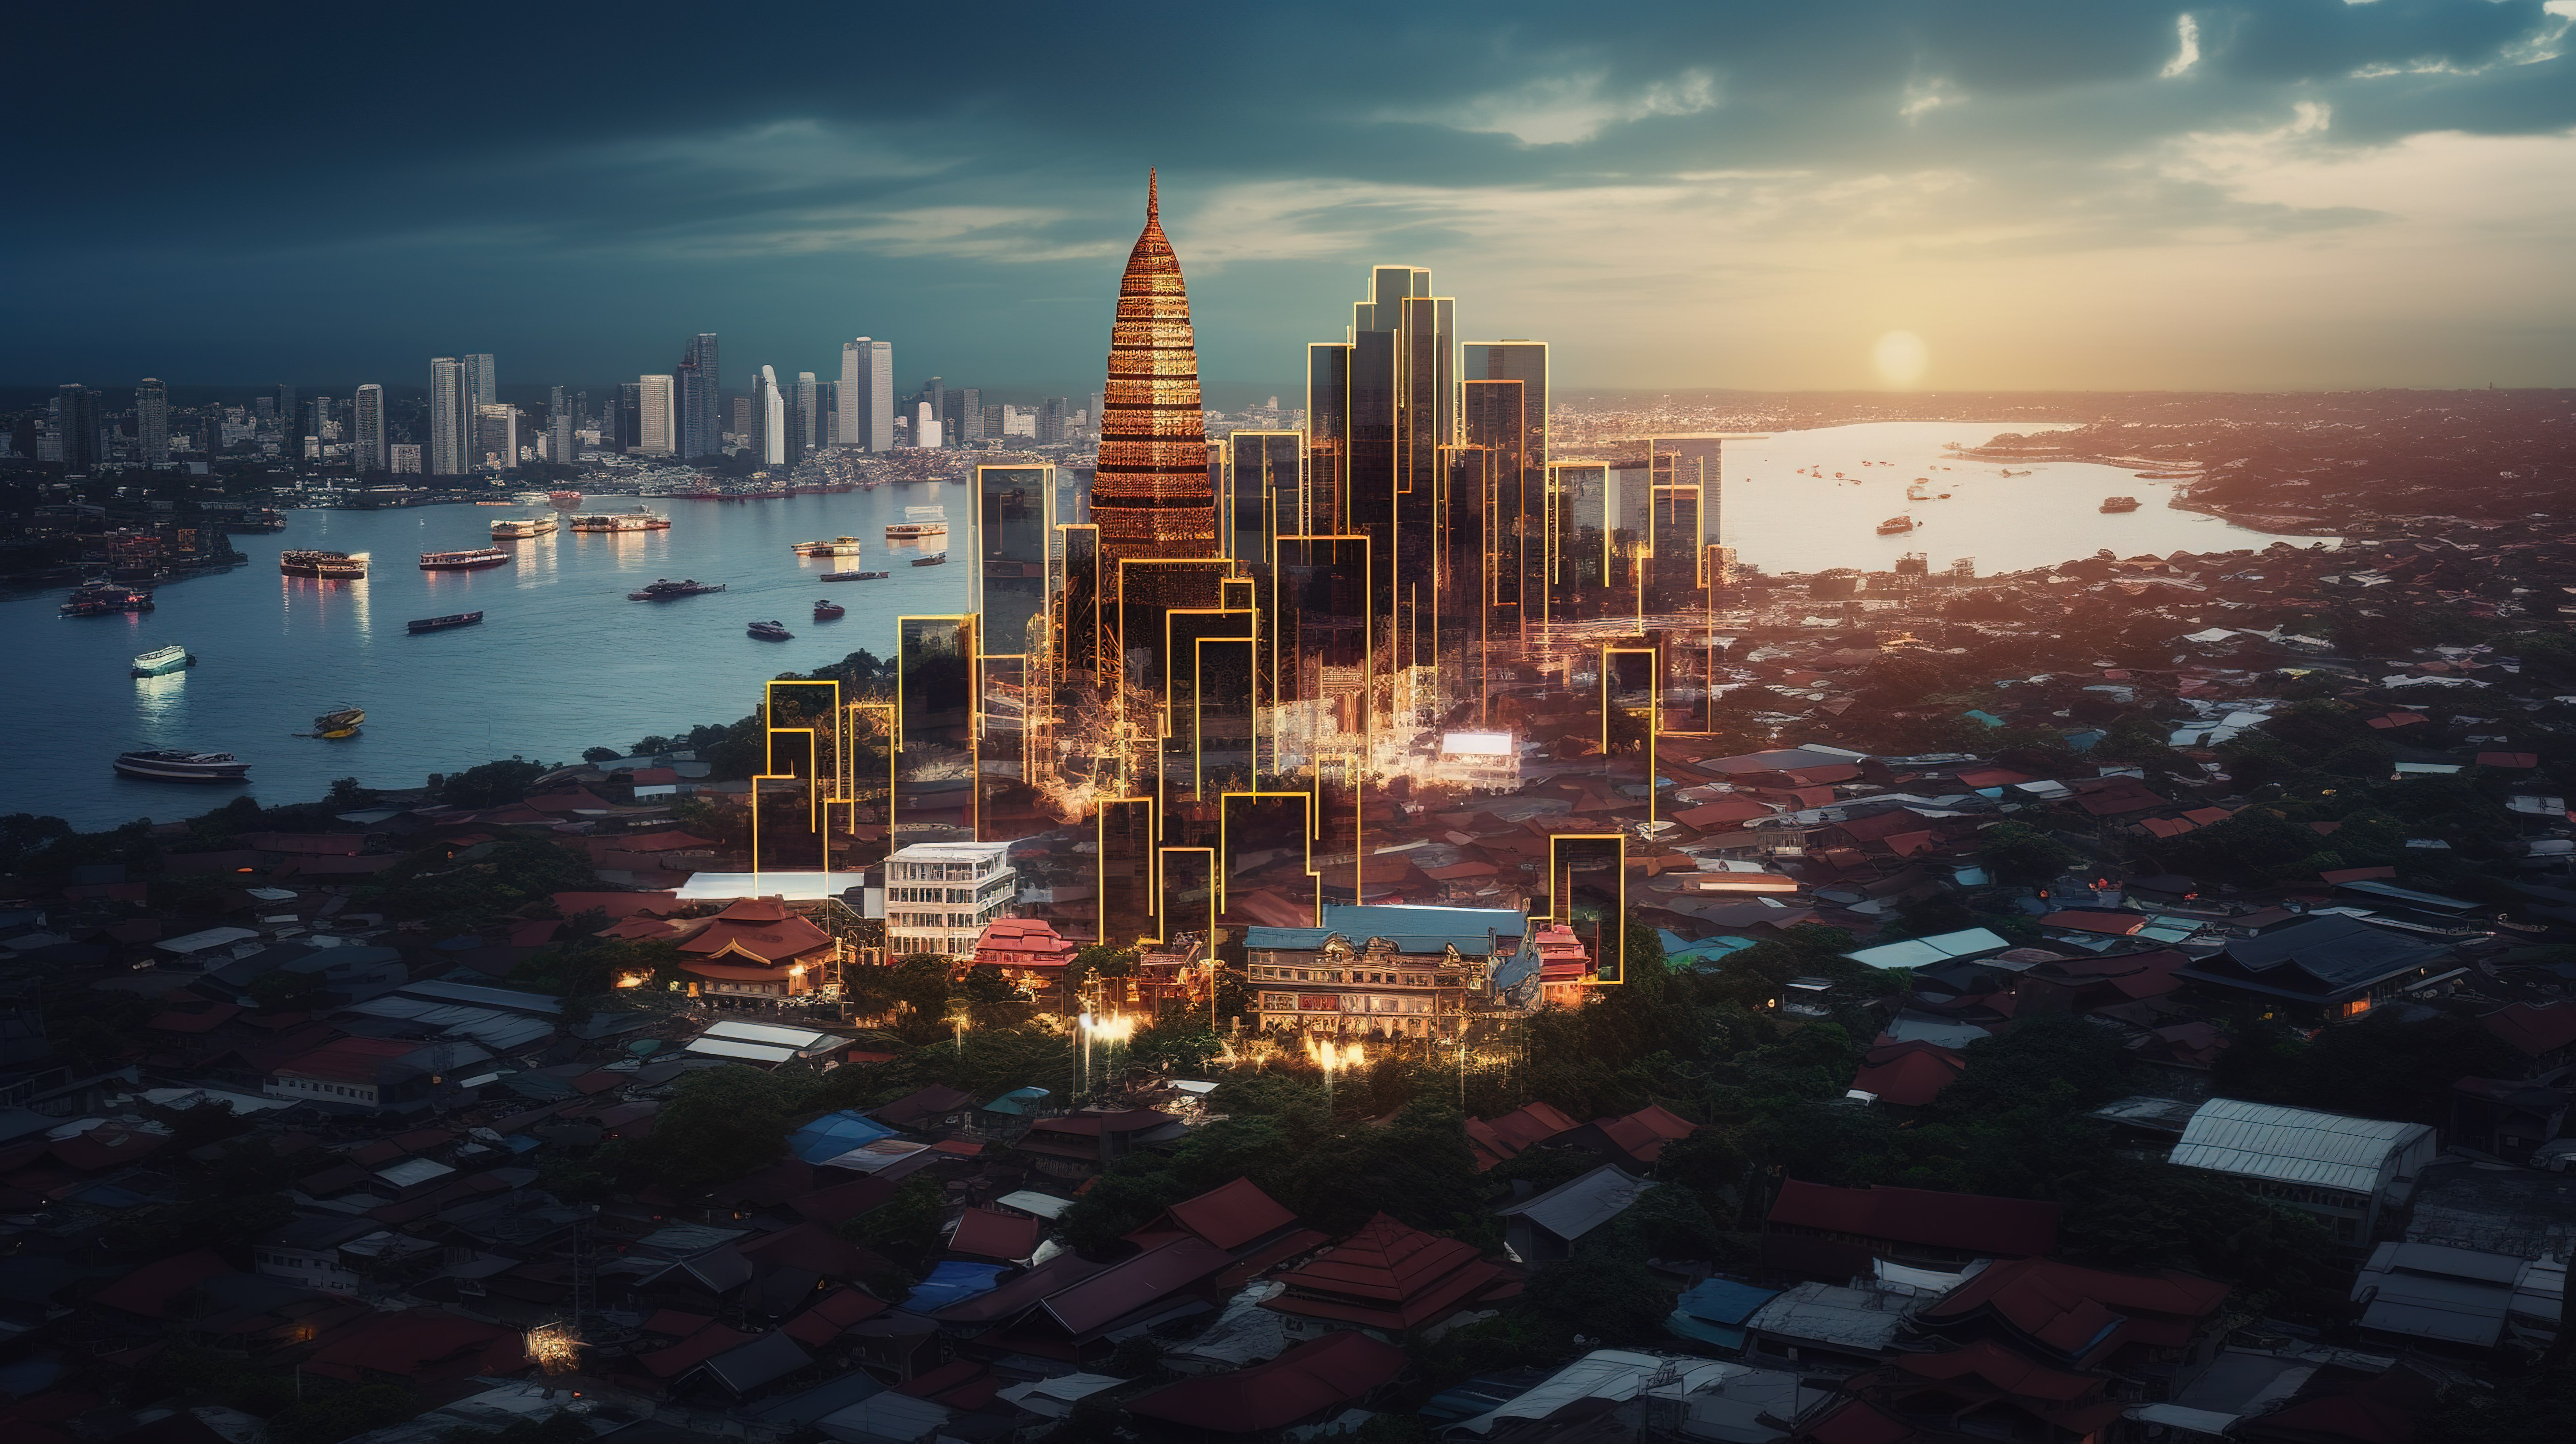 3D 渲染视觉效果描绘了泰国蓬勃发展的经济信息图表和社交媒体内容图片